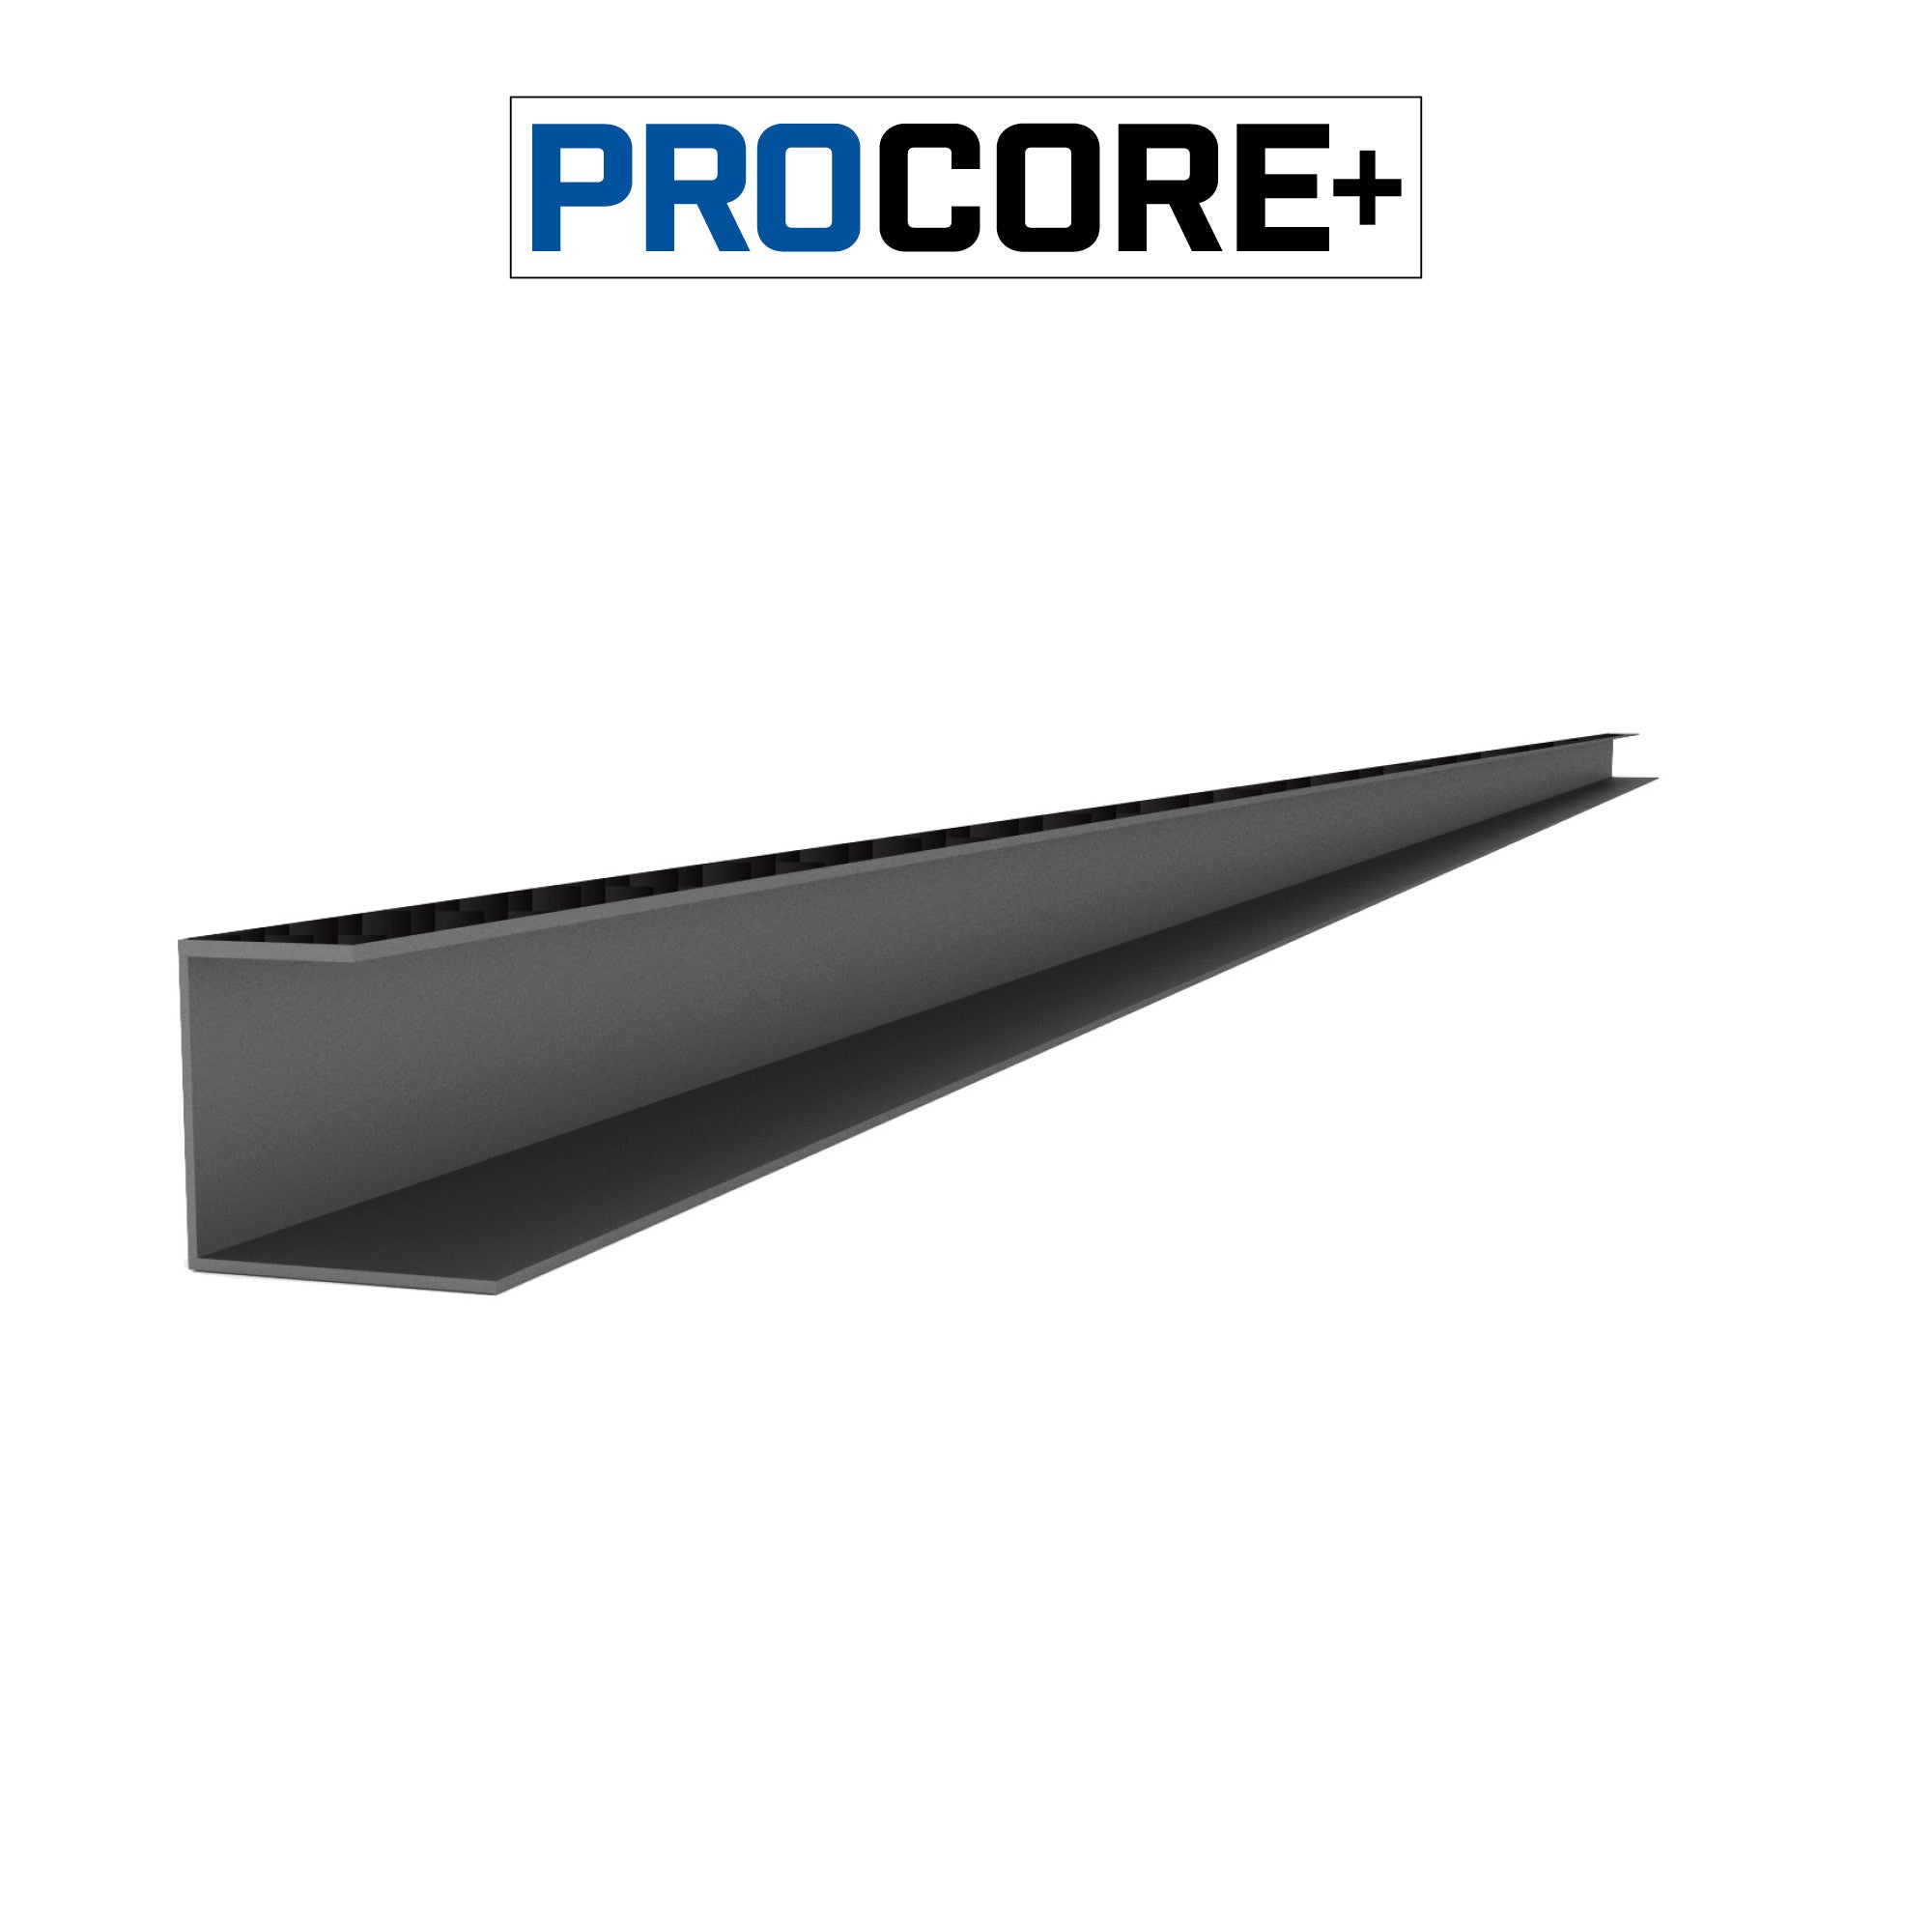 Proslat 8 ft. PROCORE+ PVC Side Trim Pack - Trims